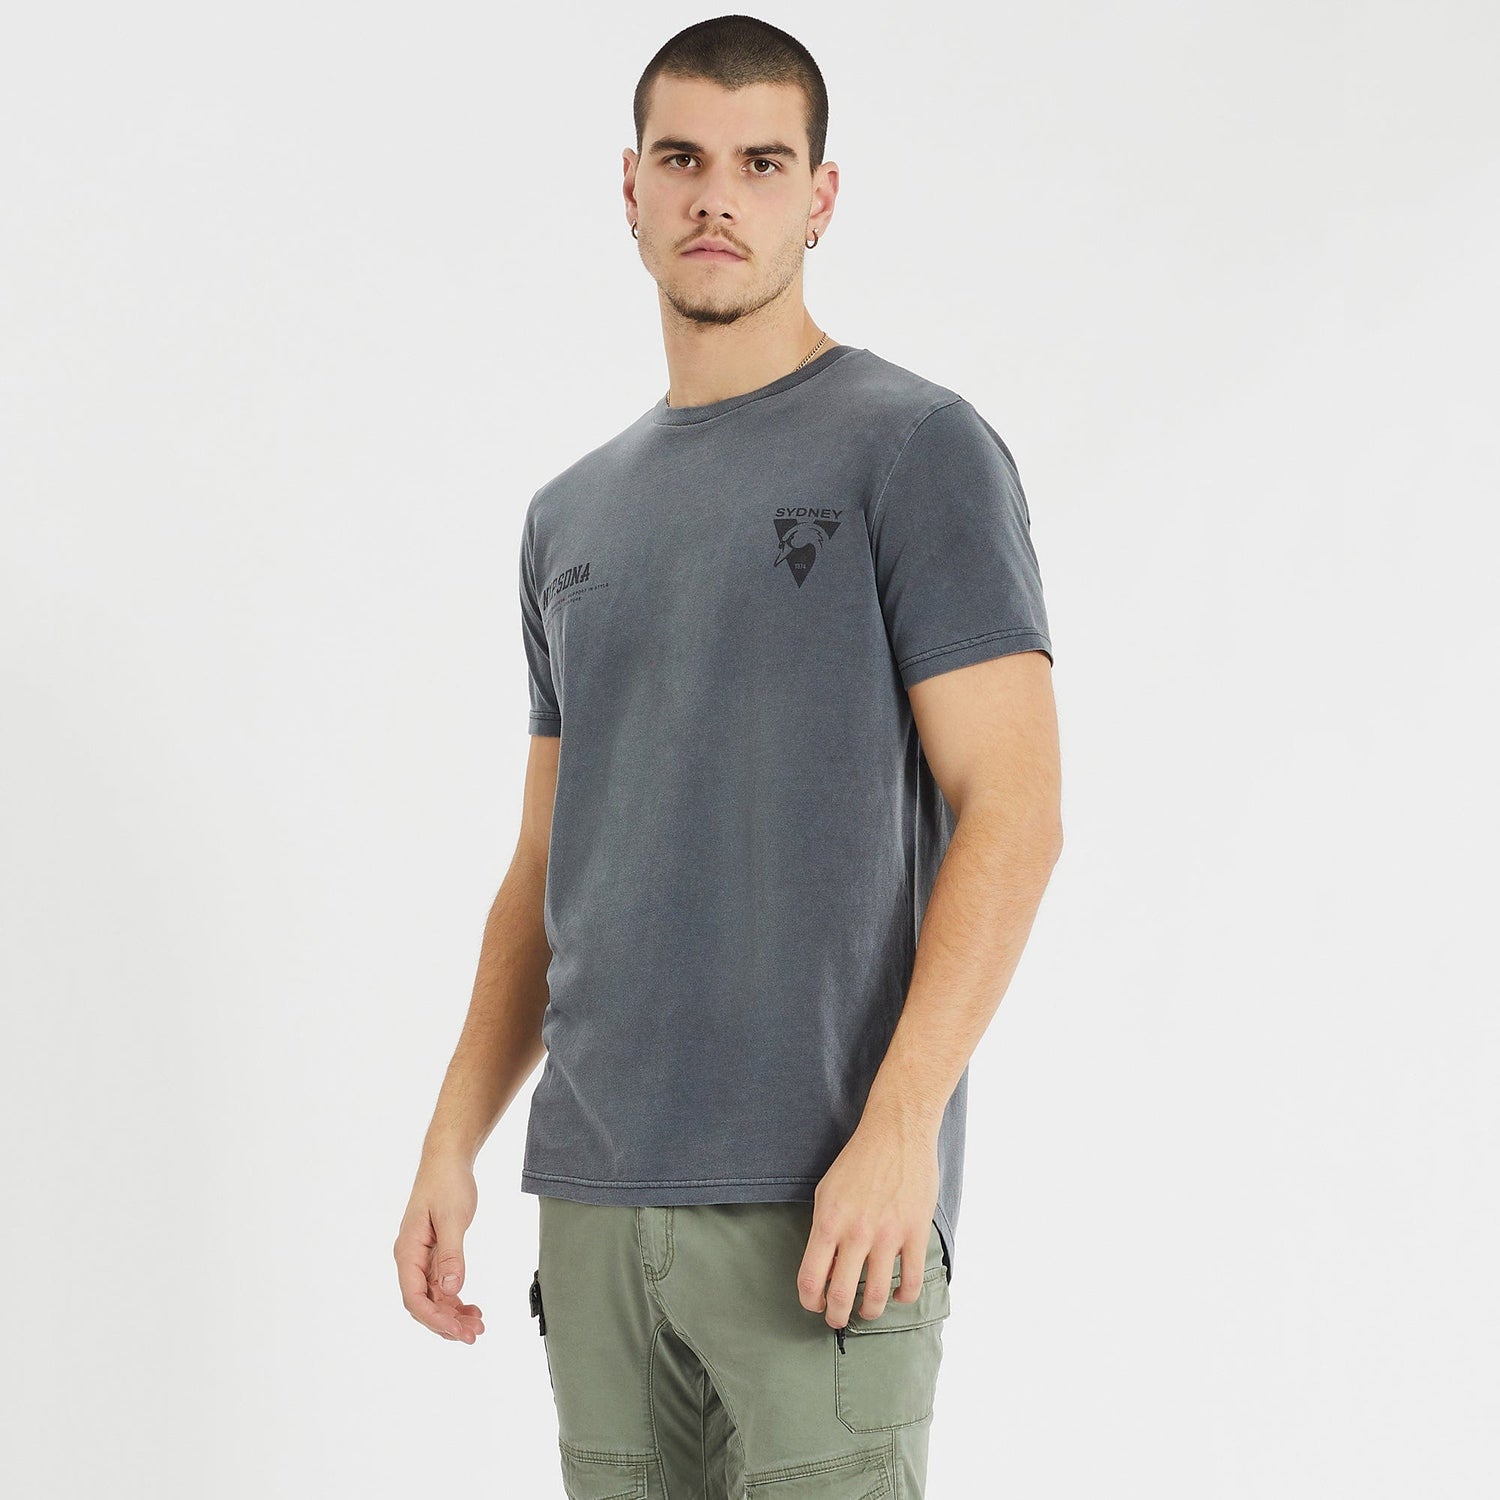 Sydney Swans Cape Back T-Shirt Pigment Charcoal